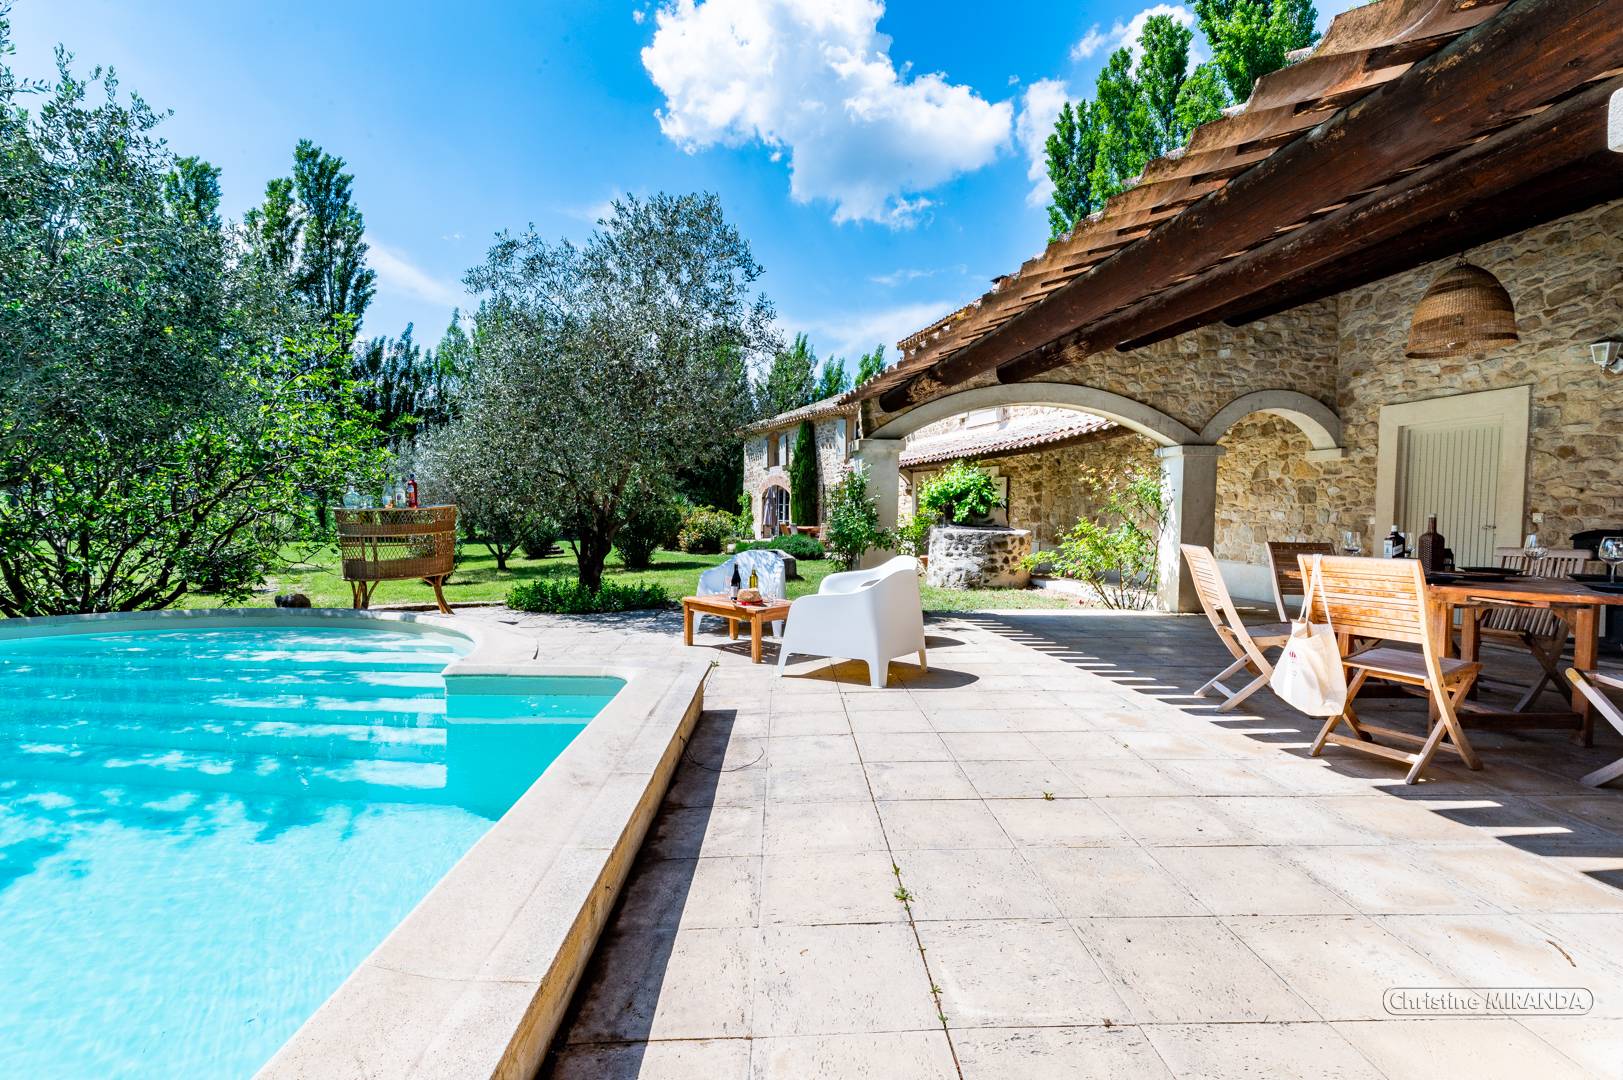 Location de vacances en Provence avec piscine chauffée